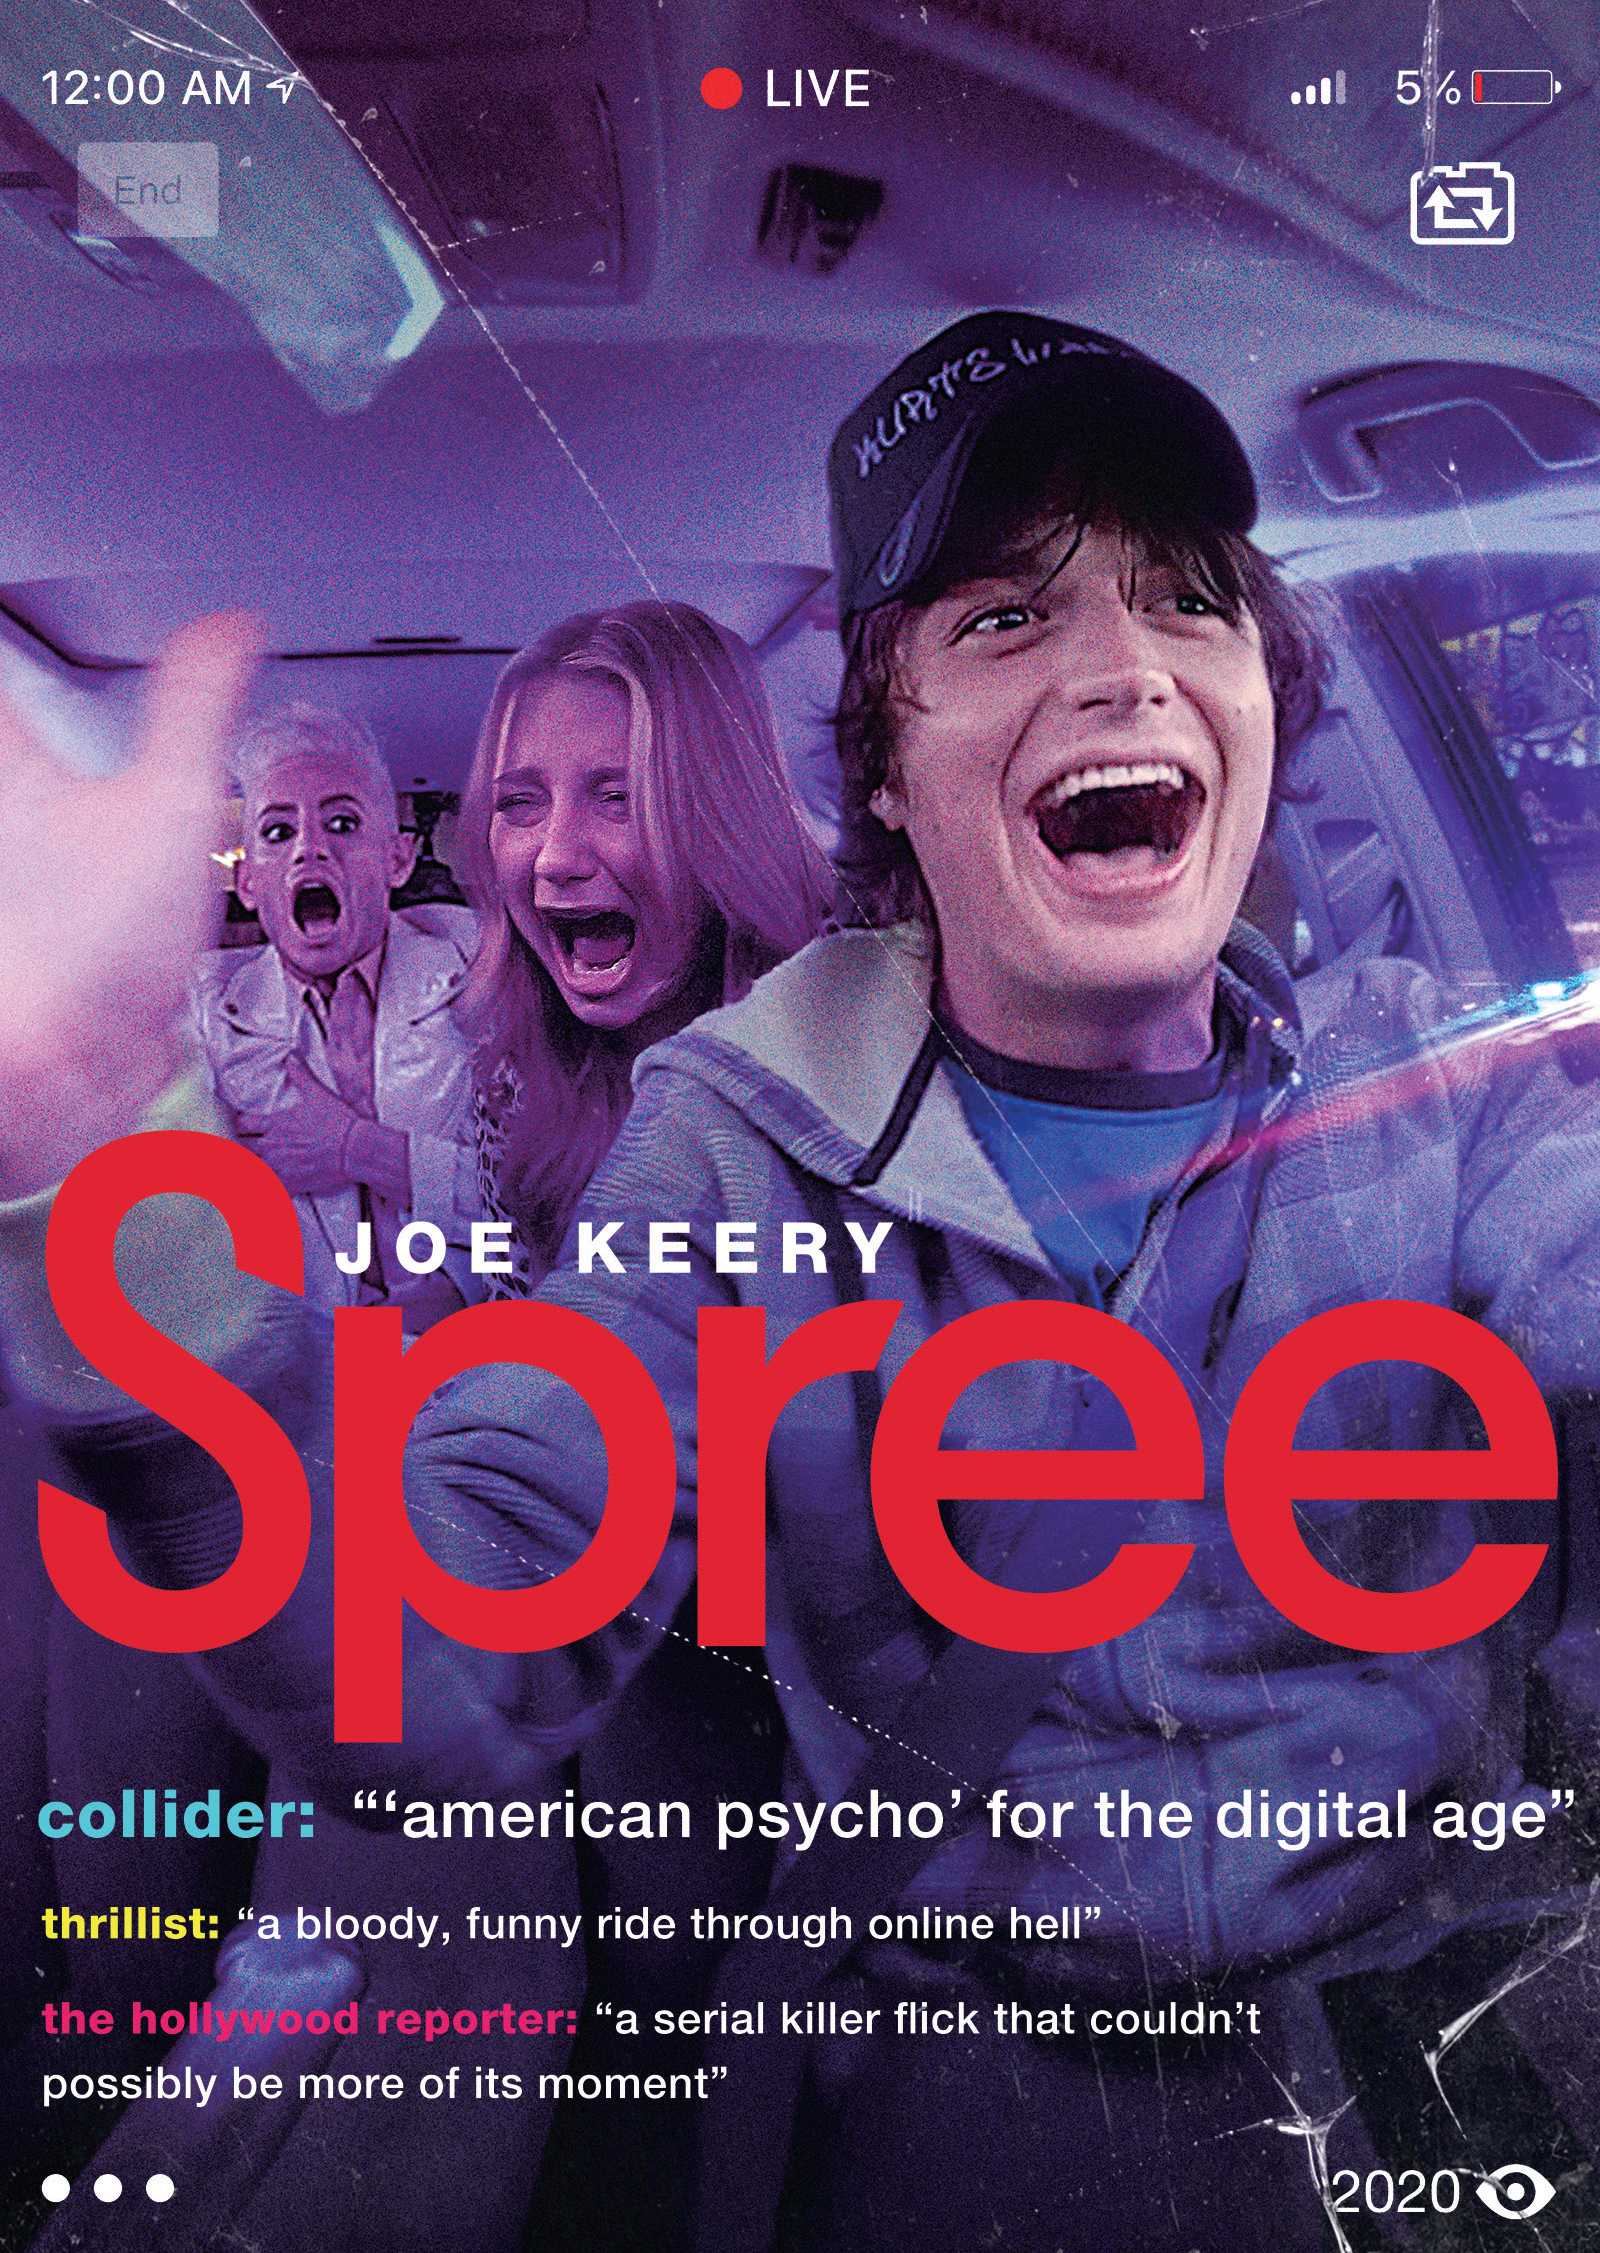 Spree (2020)